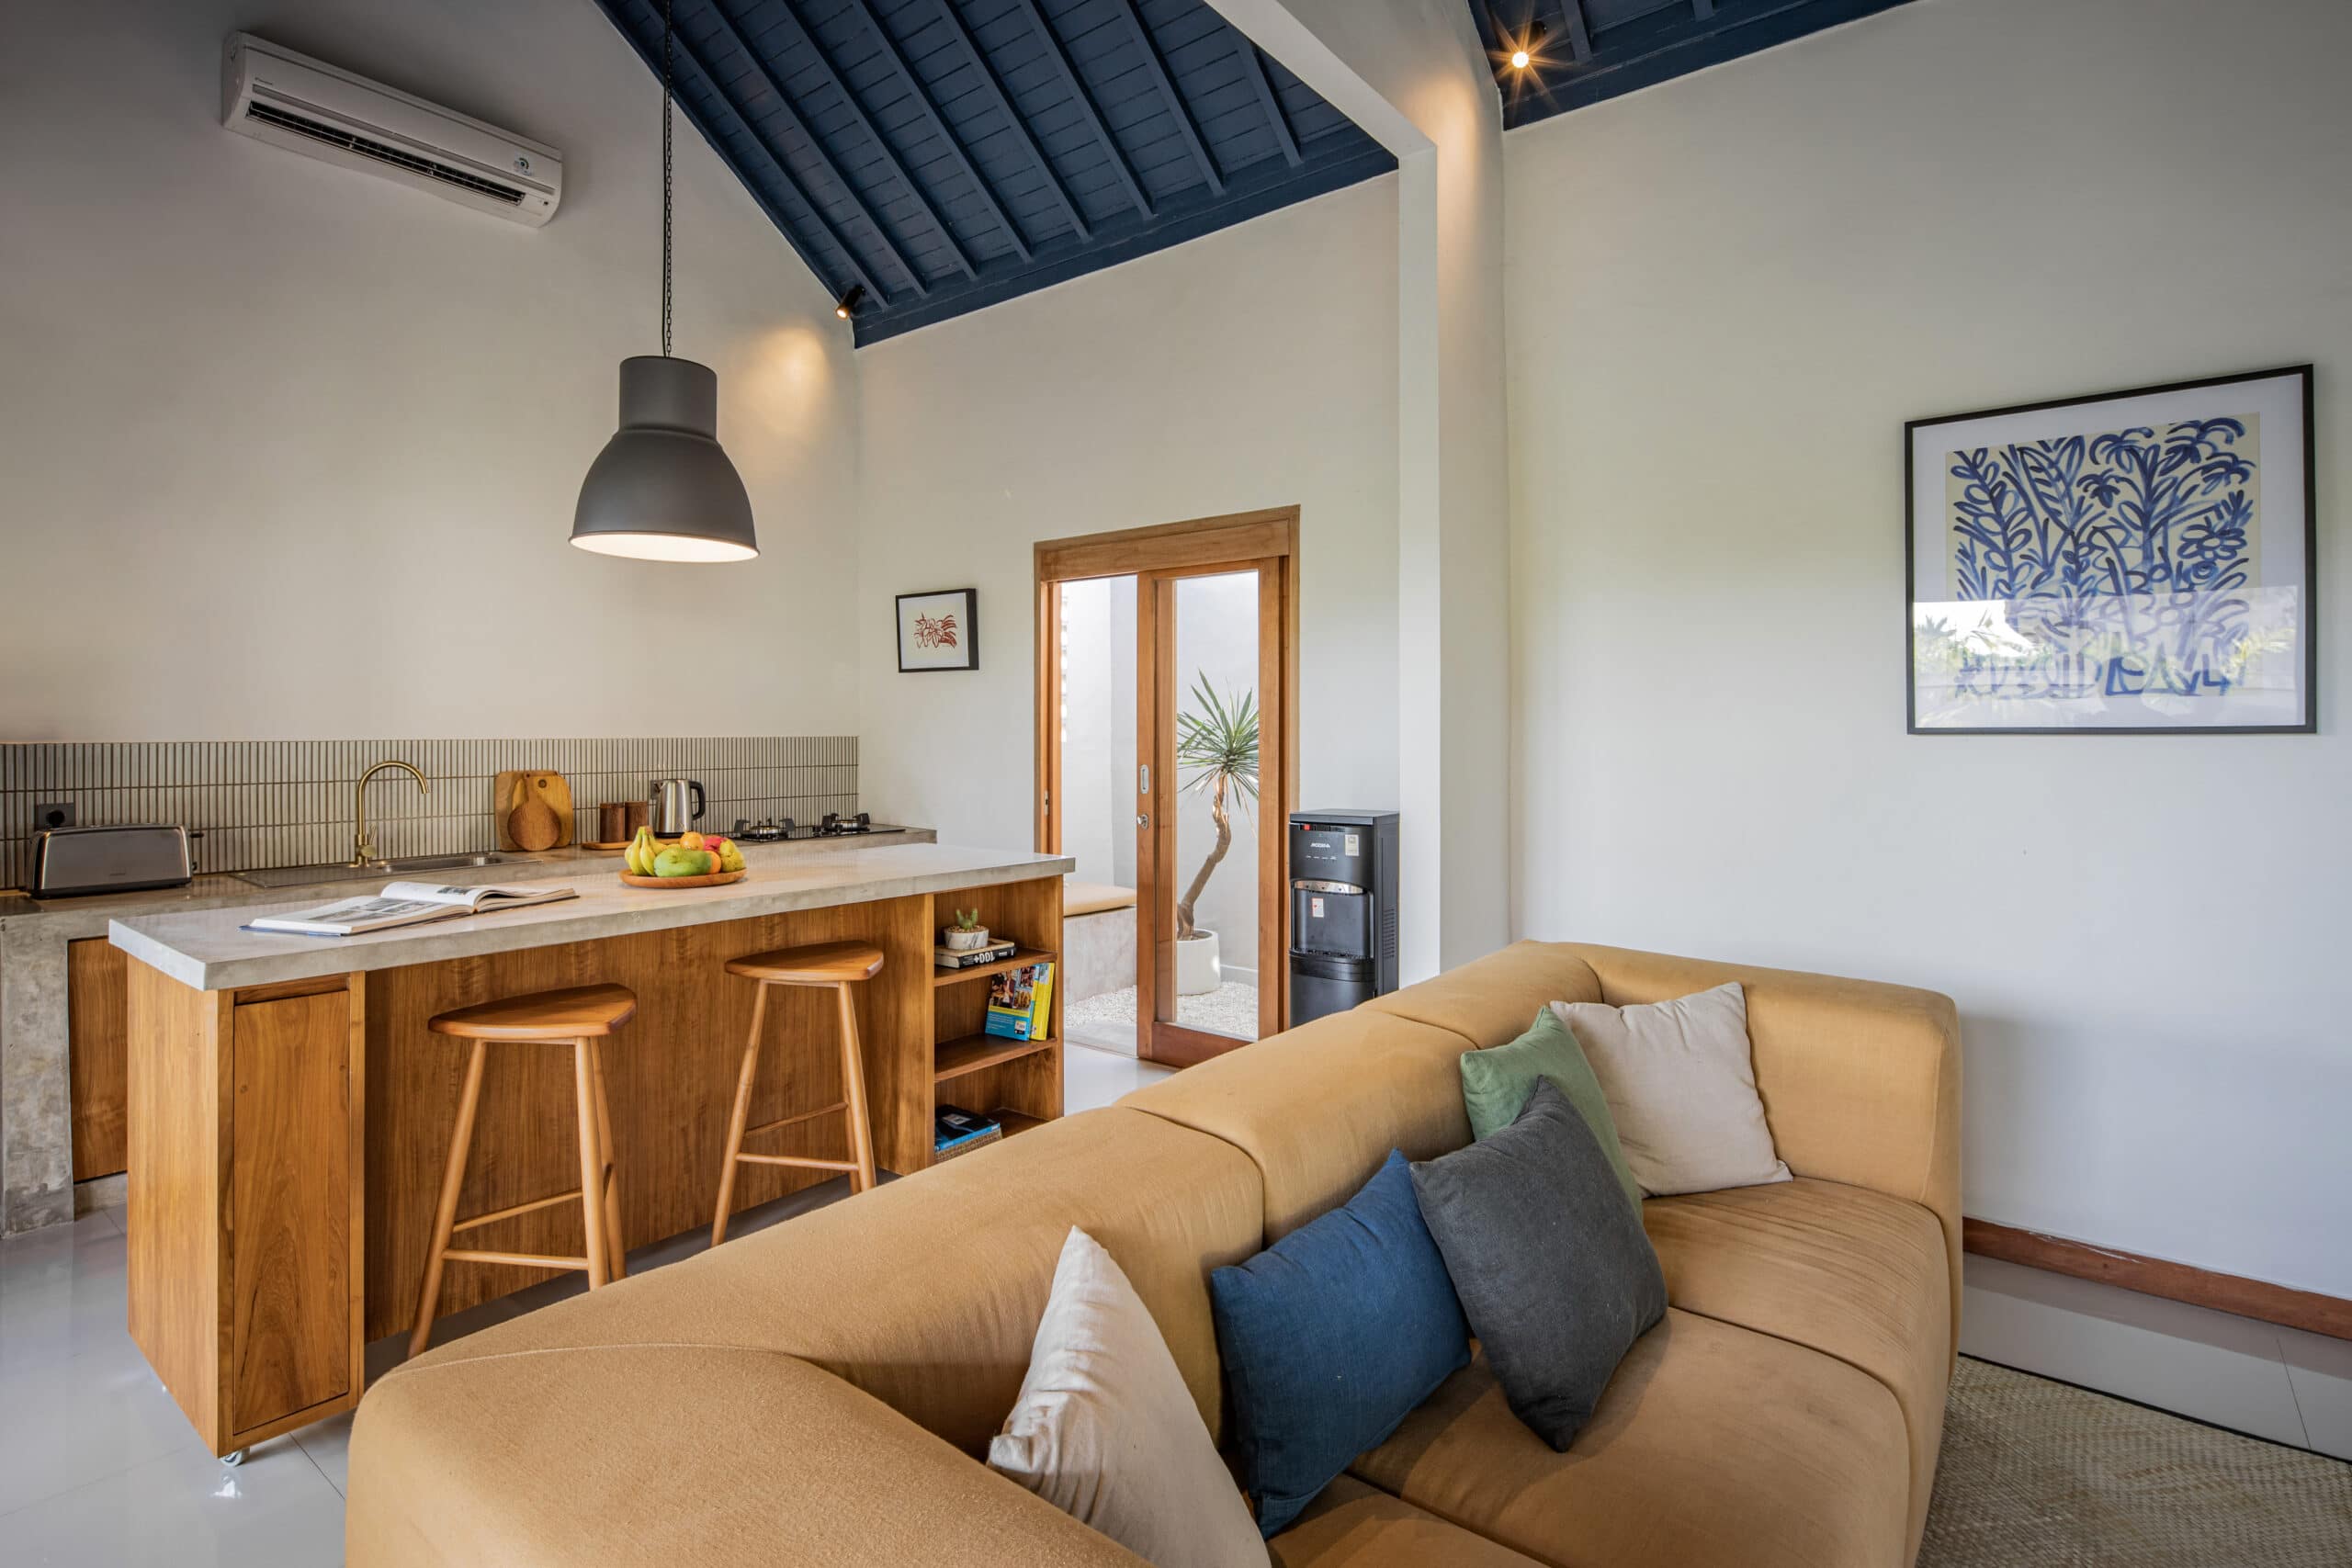 Design Assembly - Palm Studio - Bali Architect - Interior Design - Bali Villa - Living Room